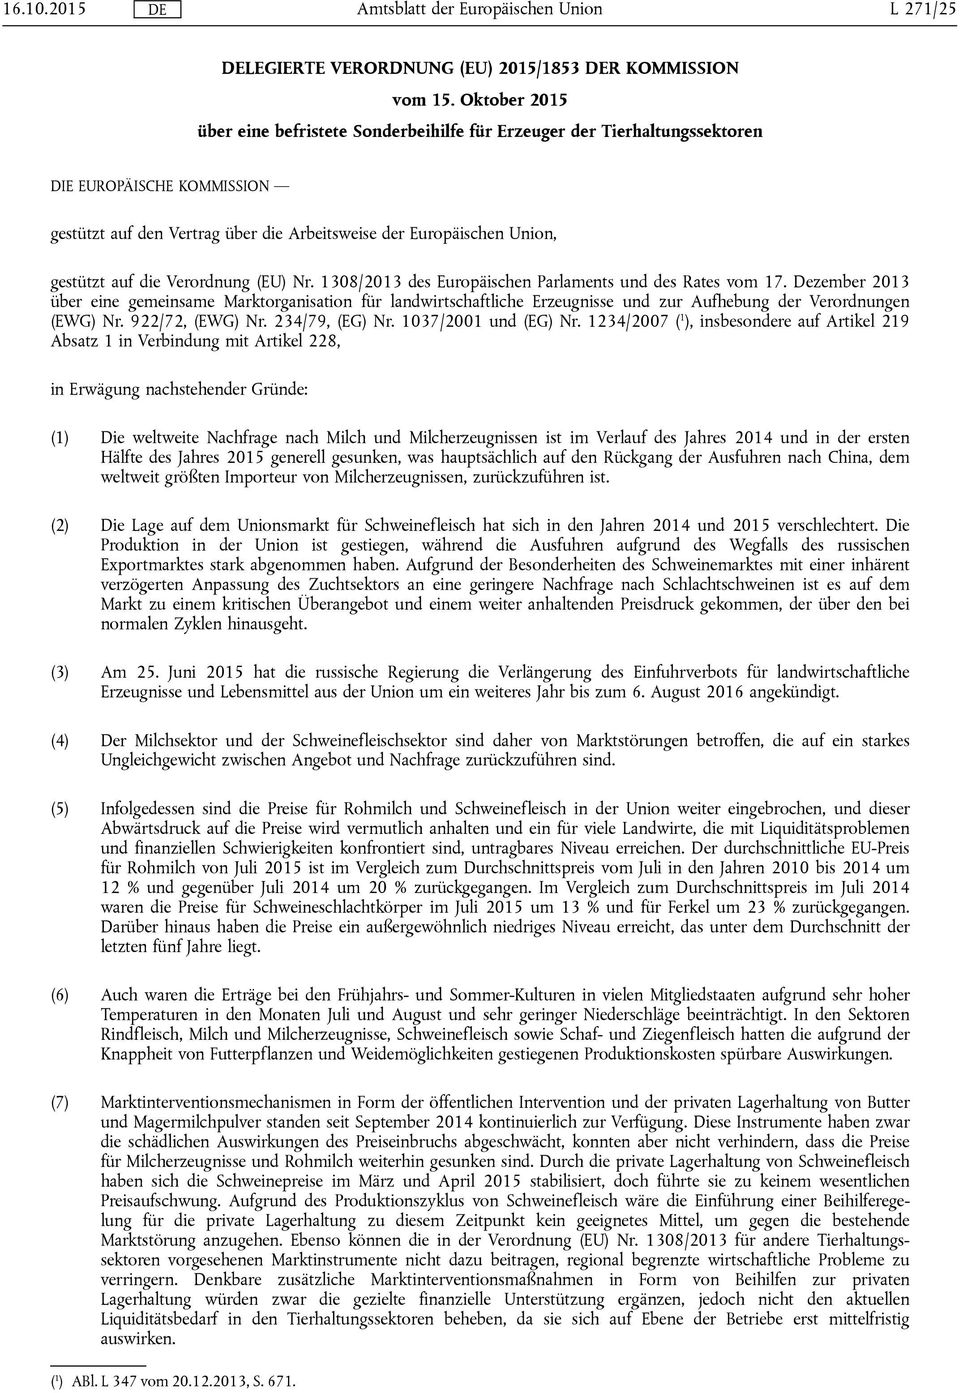 die Verordnung (EU) Nr. 1308/2013 des Europäischen Parlaments und des Rates vom 17.